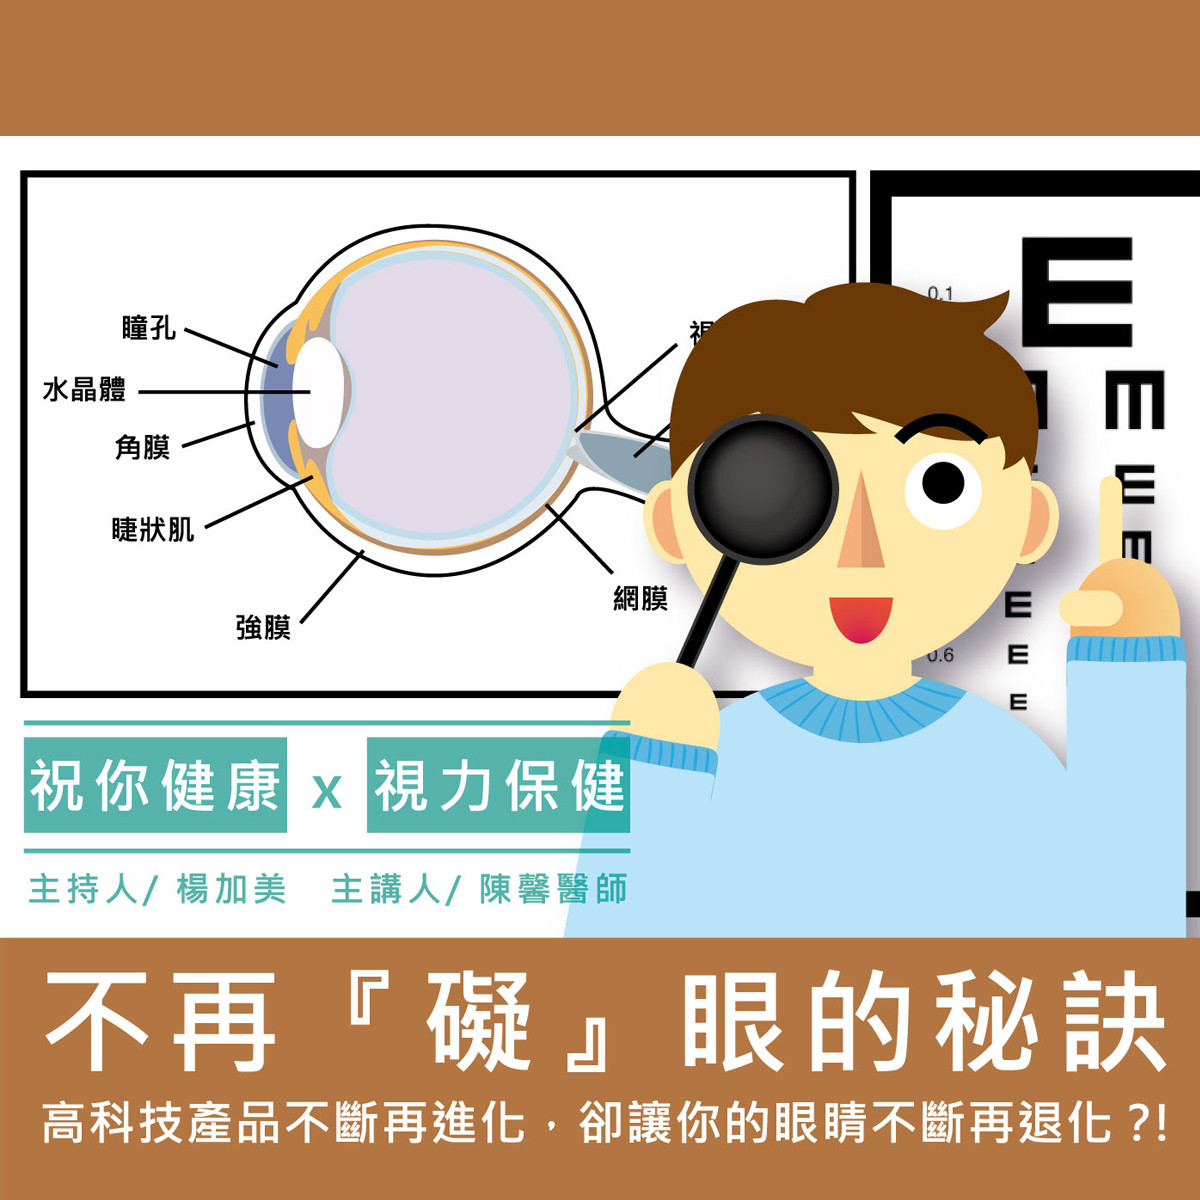 【祝你健康】視力保健 - 7.遠視封面圖